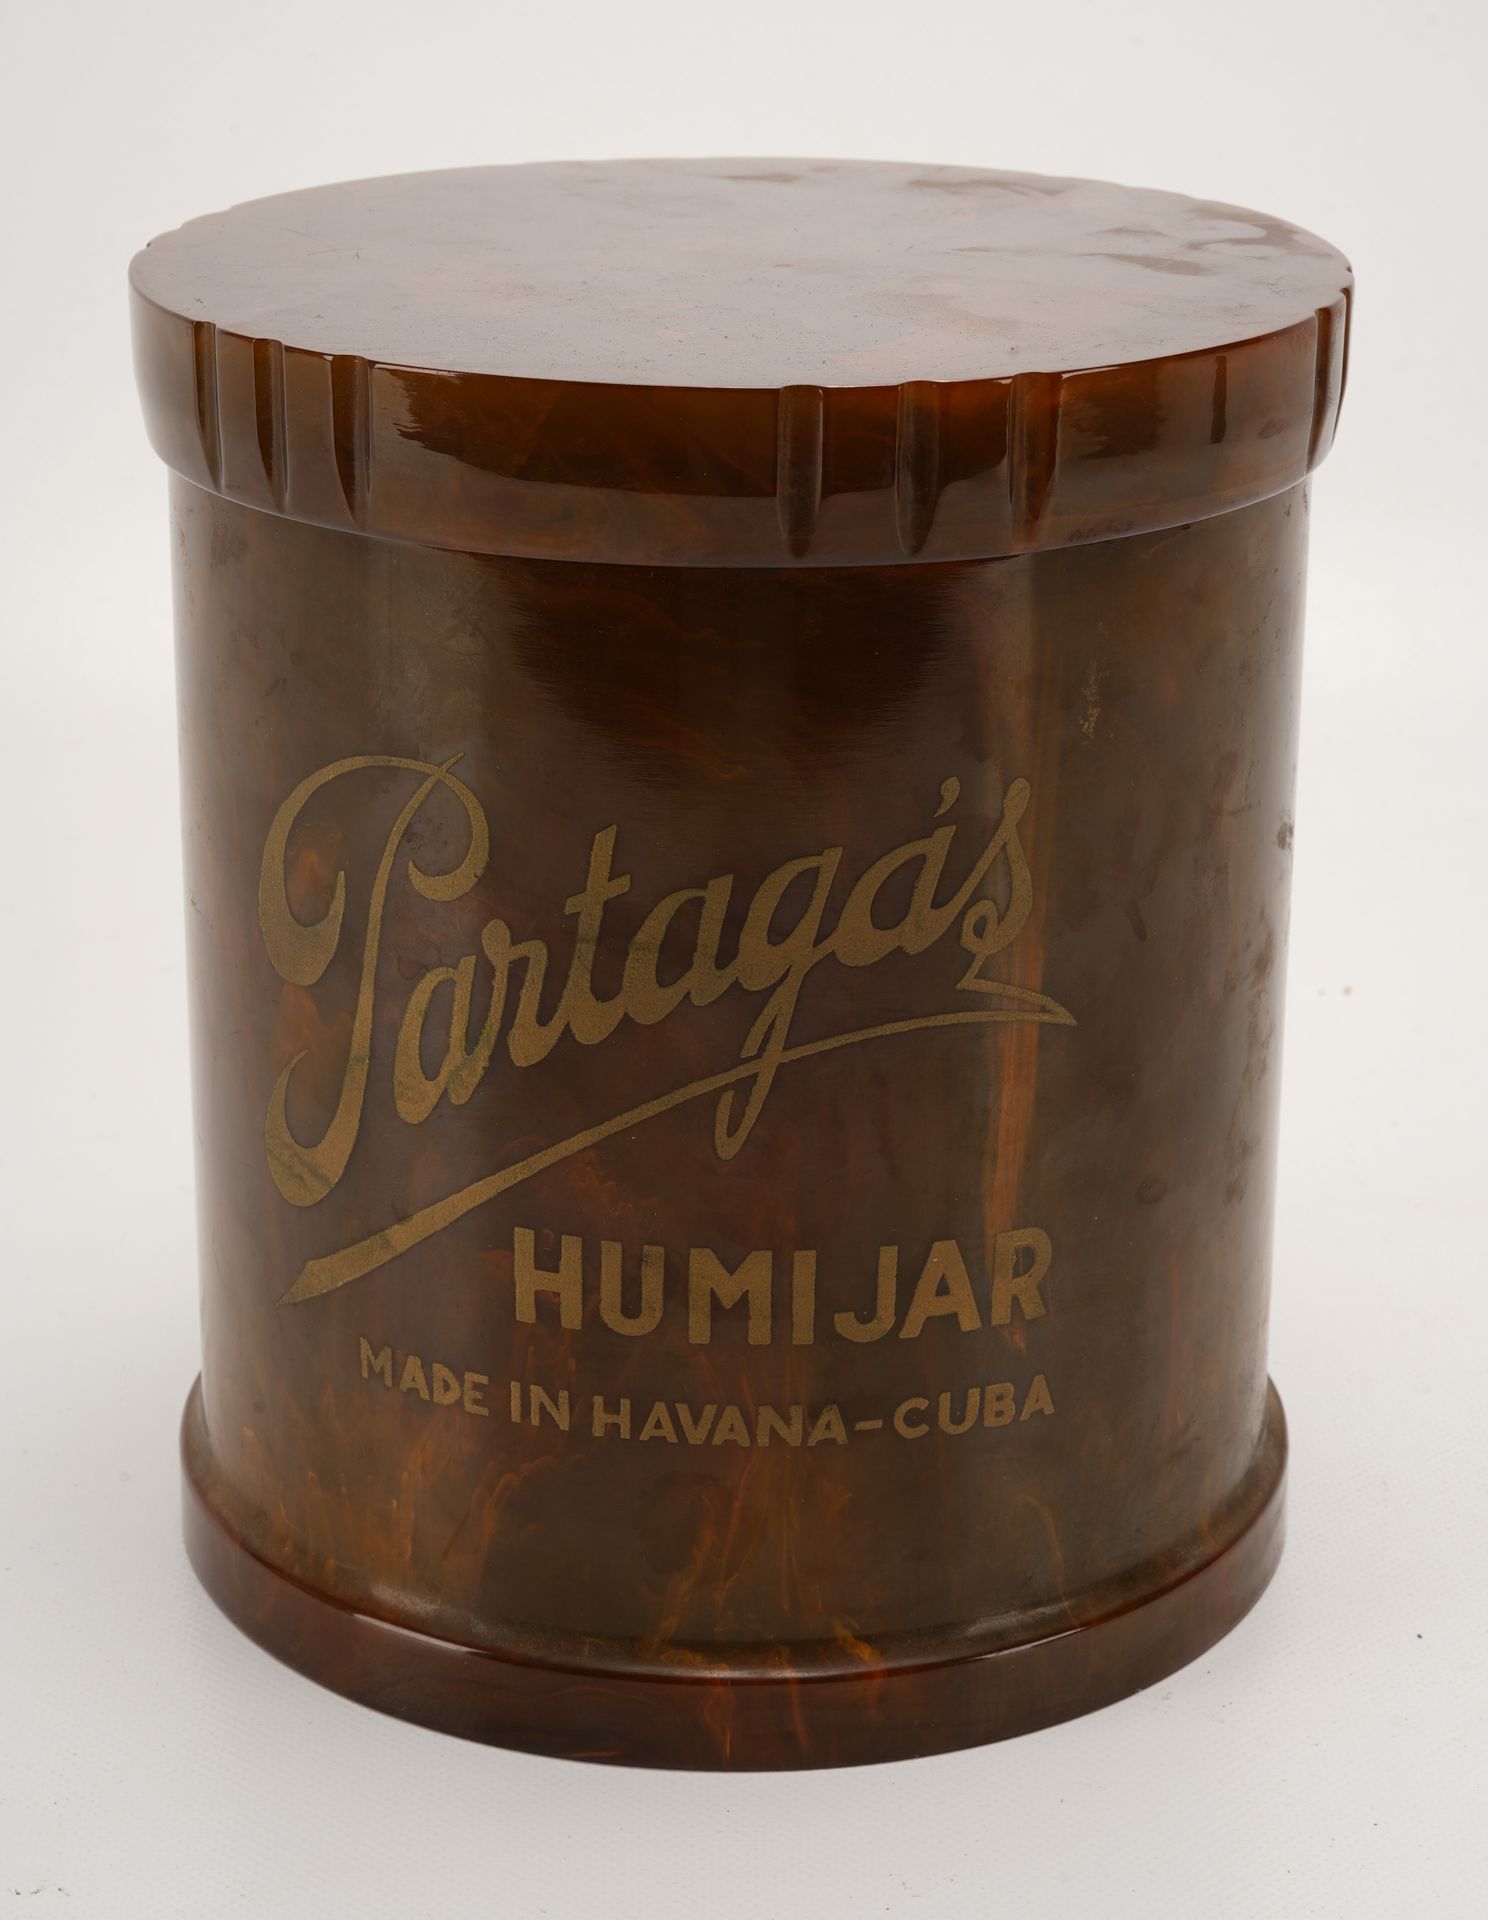 PARTAGAS Humidor Partagas grande con coperchio a vite. "Partagas Humijar Made in&hellip;